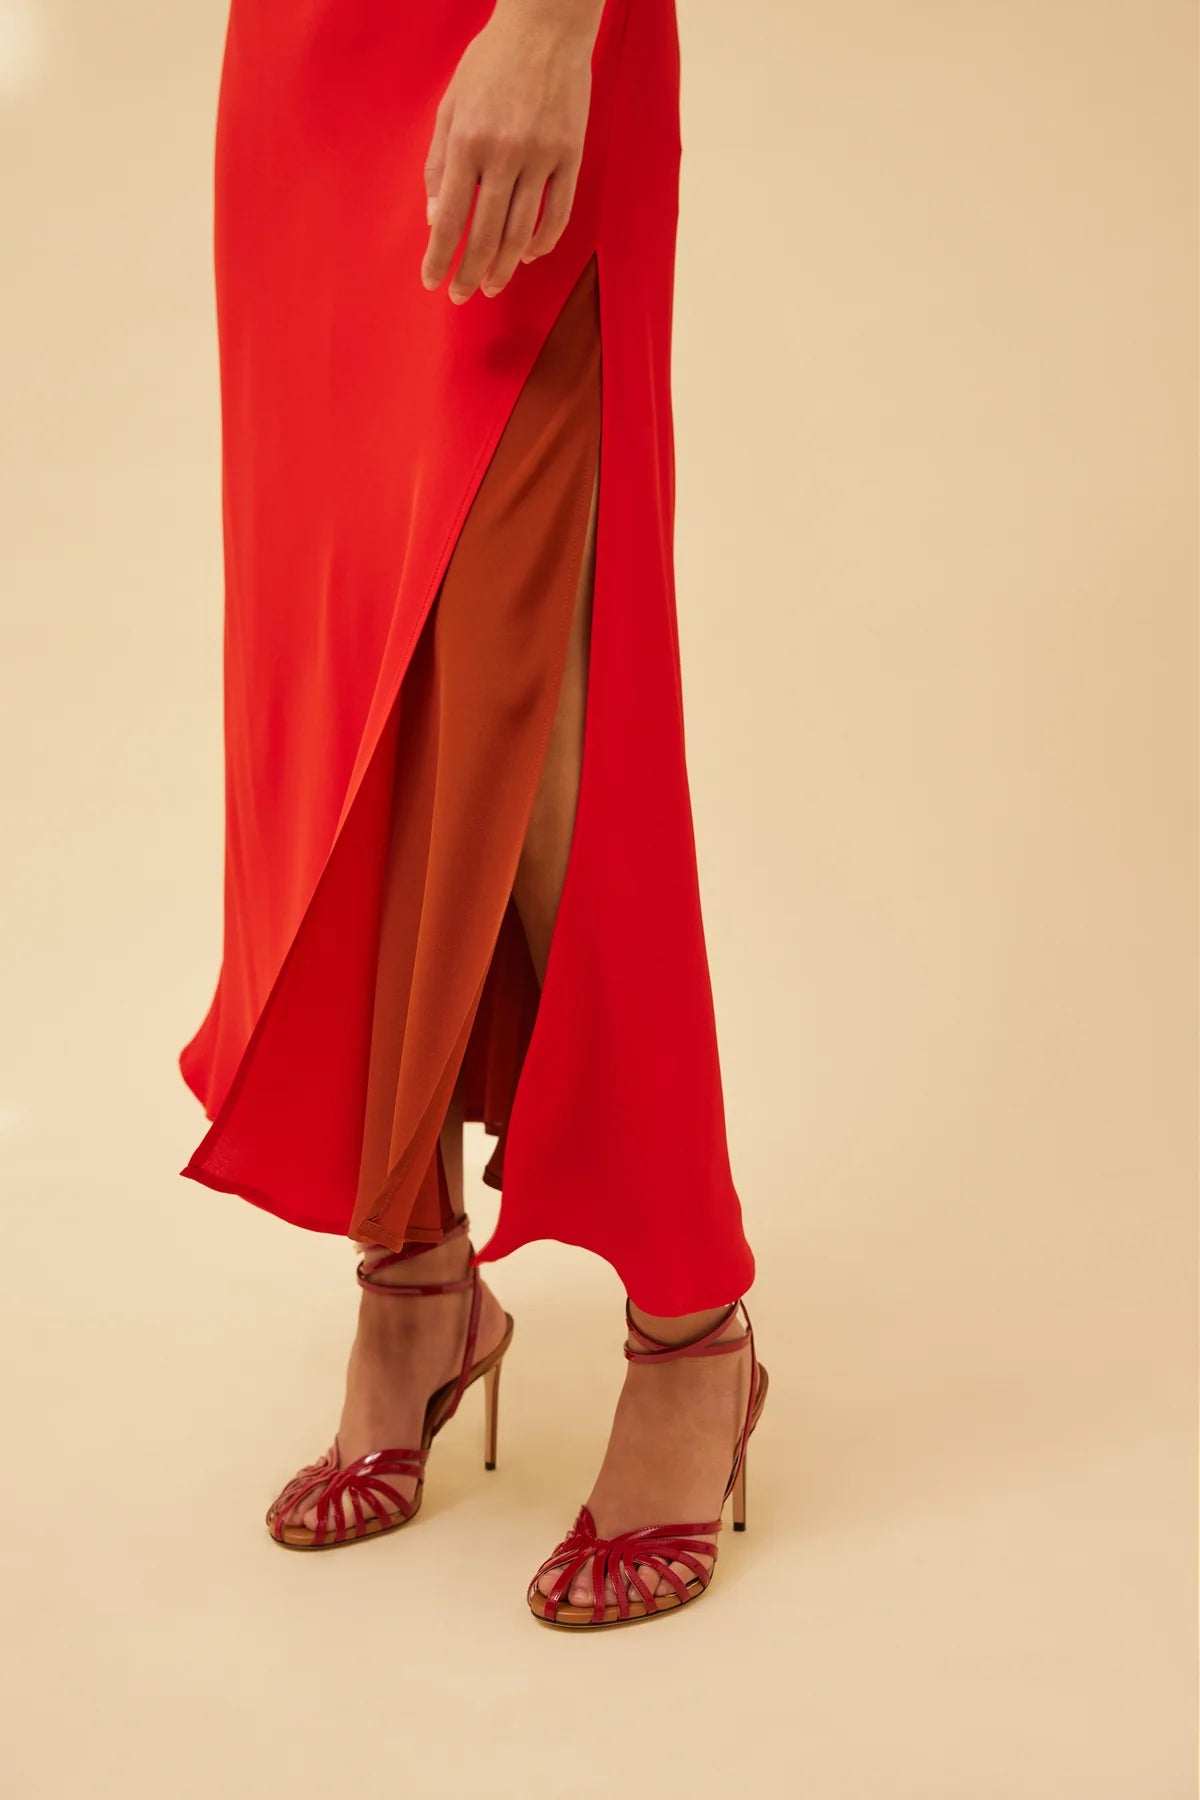 Vestido lencero bicolor rojo-avellana